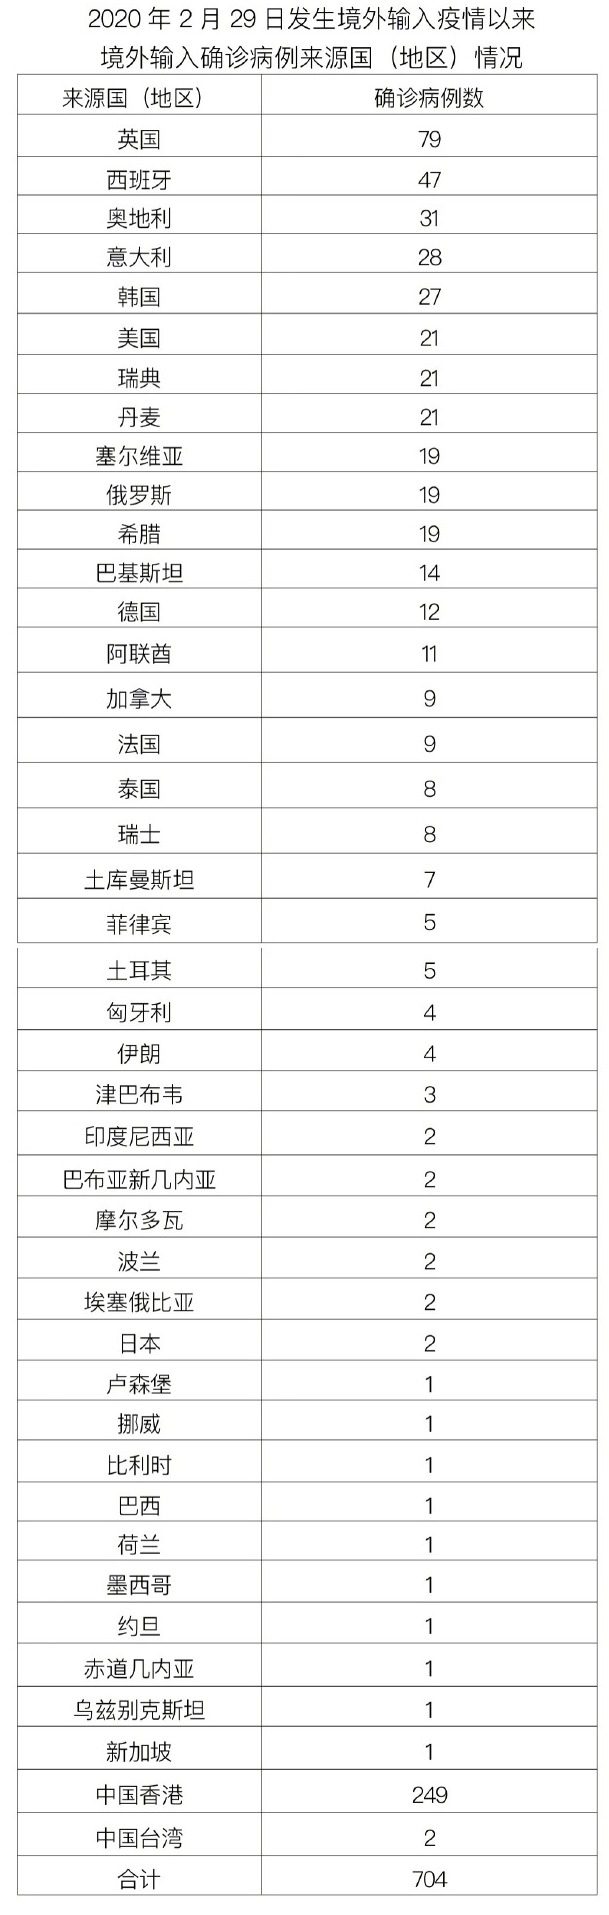 北京昨日新增本土14+5 含在校学生 详情公布